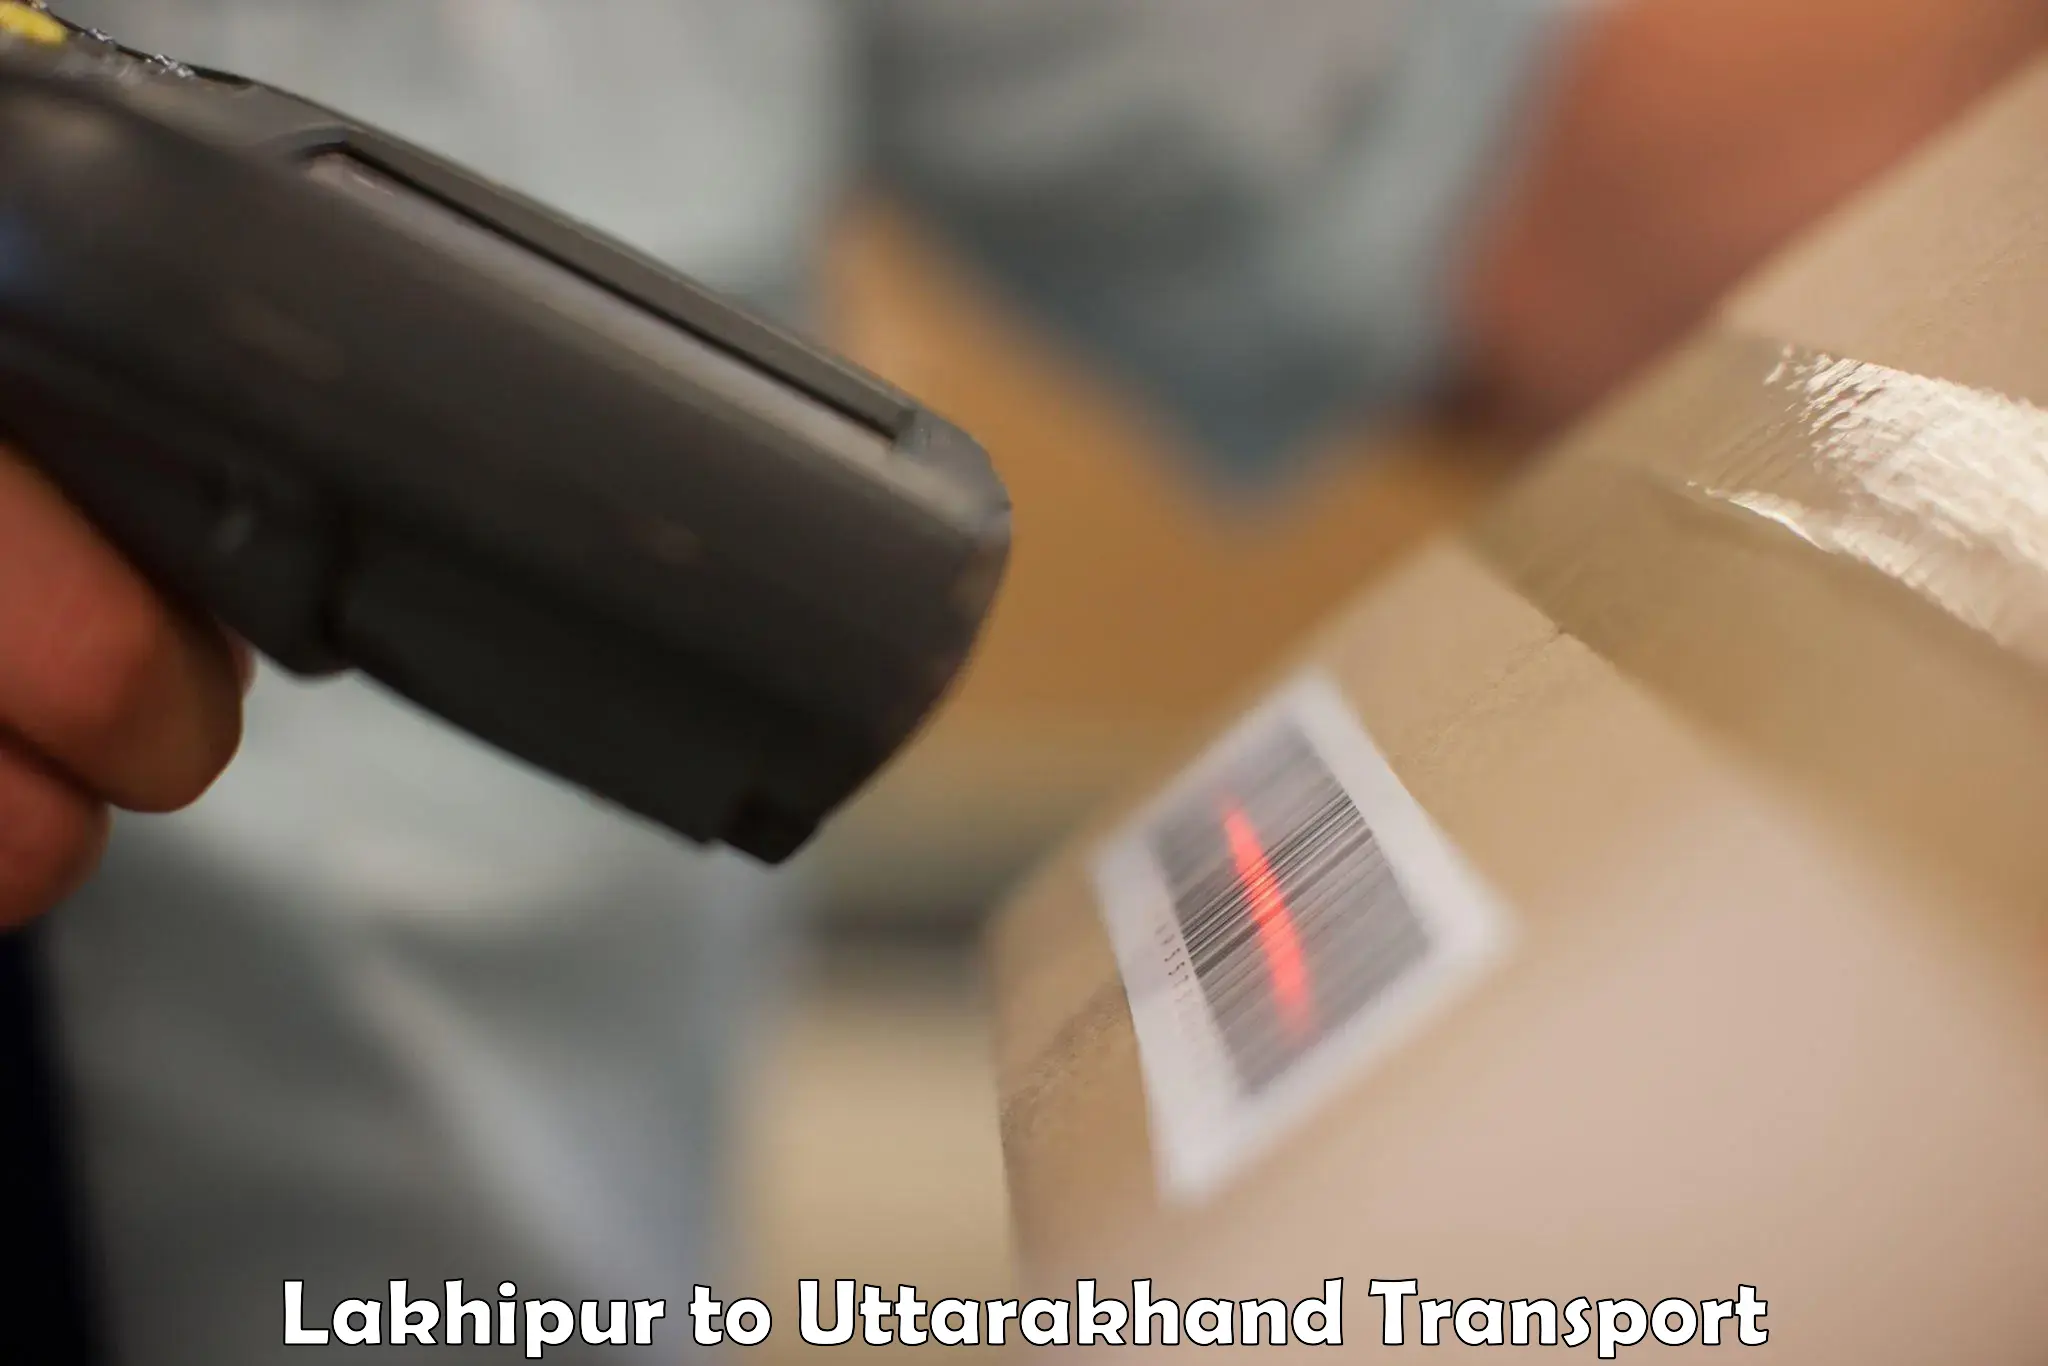 Daily transport service Lakhipur to Uttarkashi